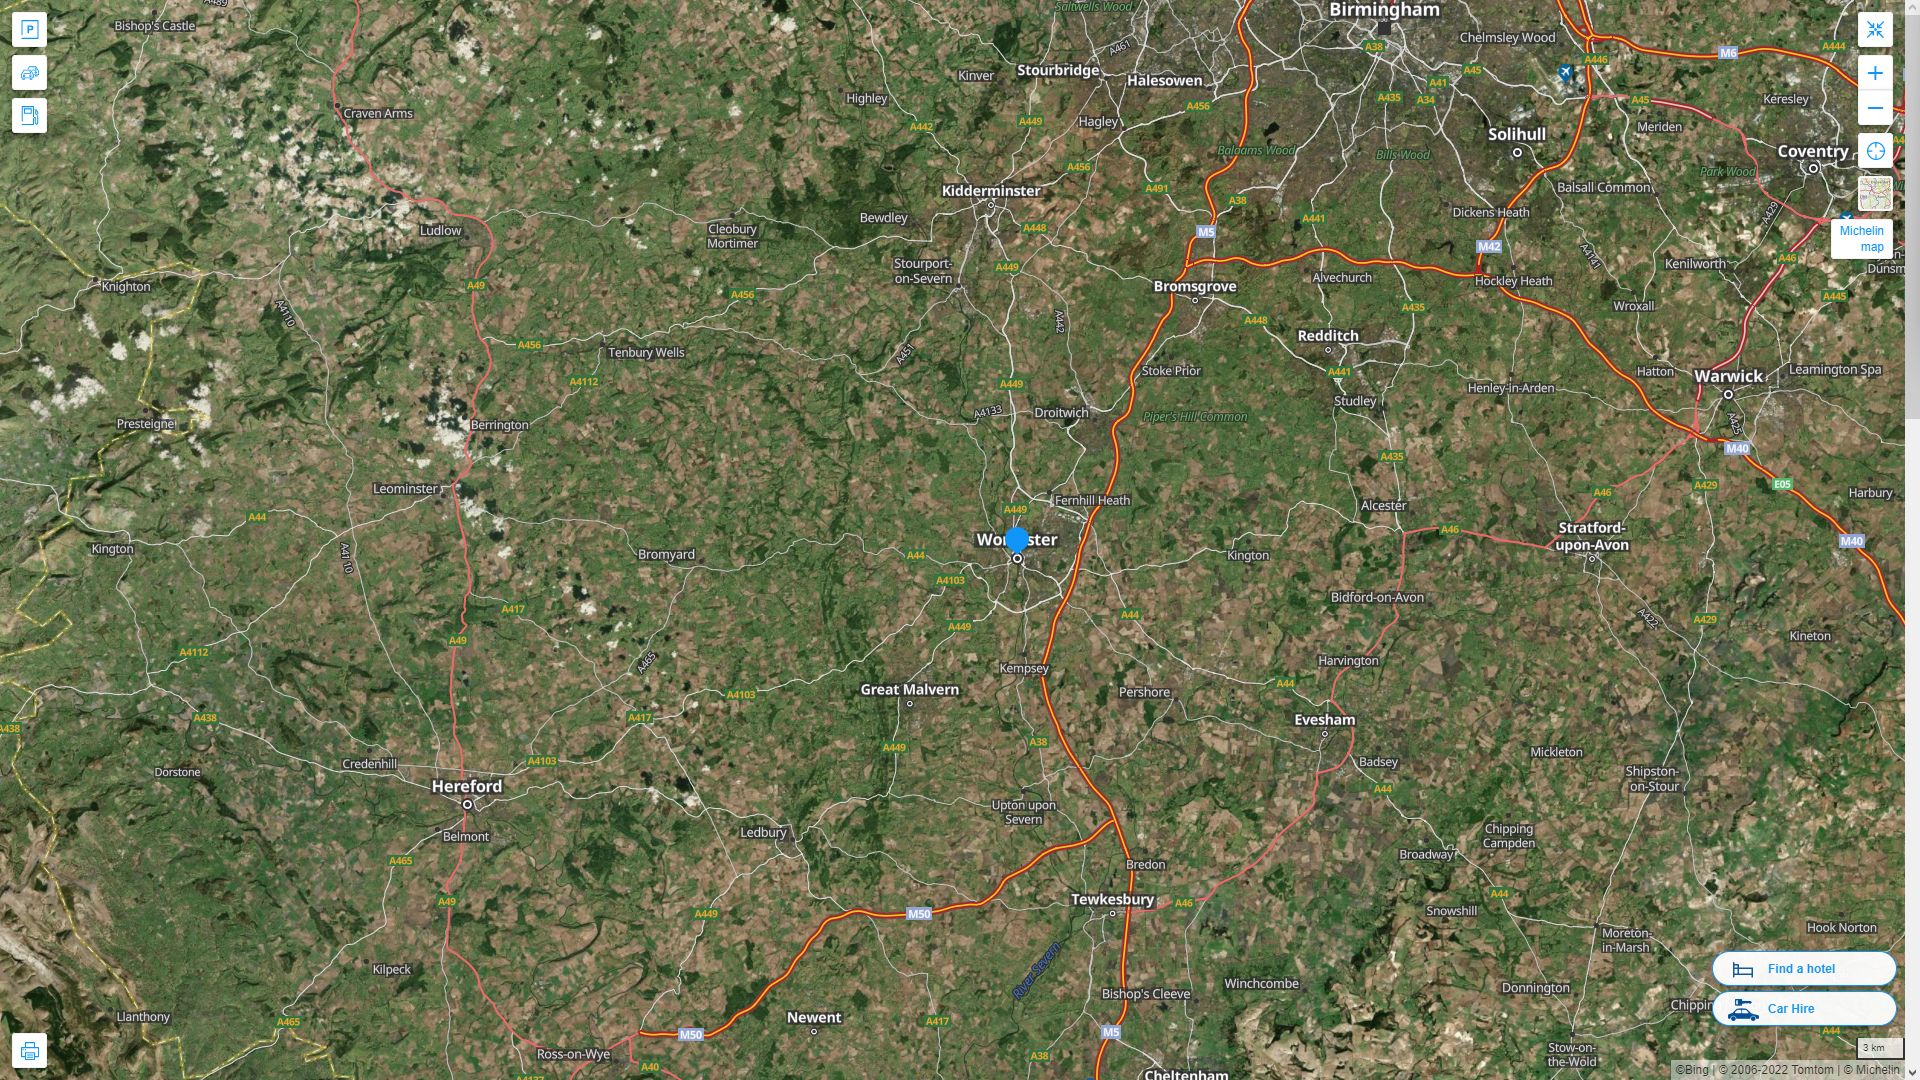 Worcester Royaume Uni Autoroute et carte routiere avec vue satellite